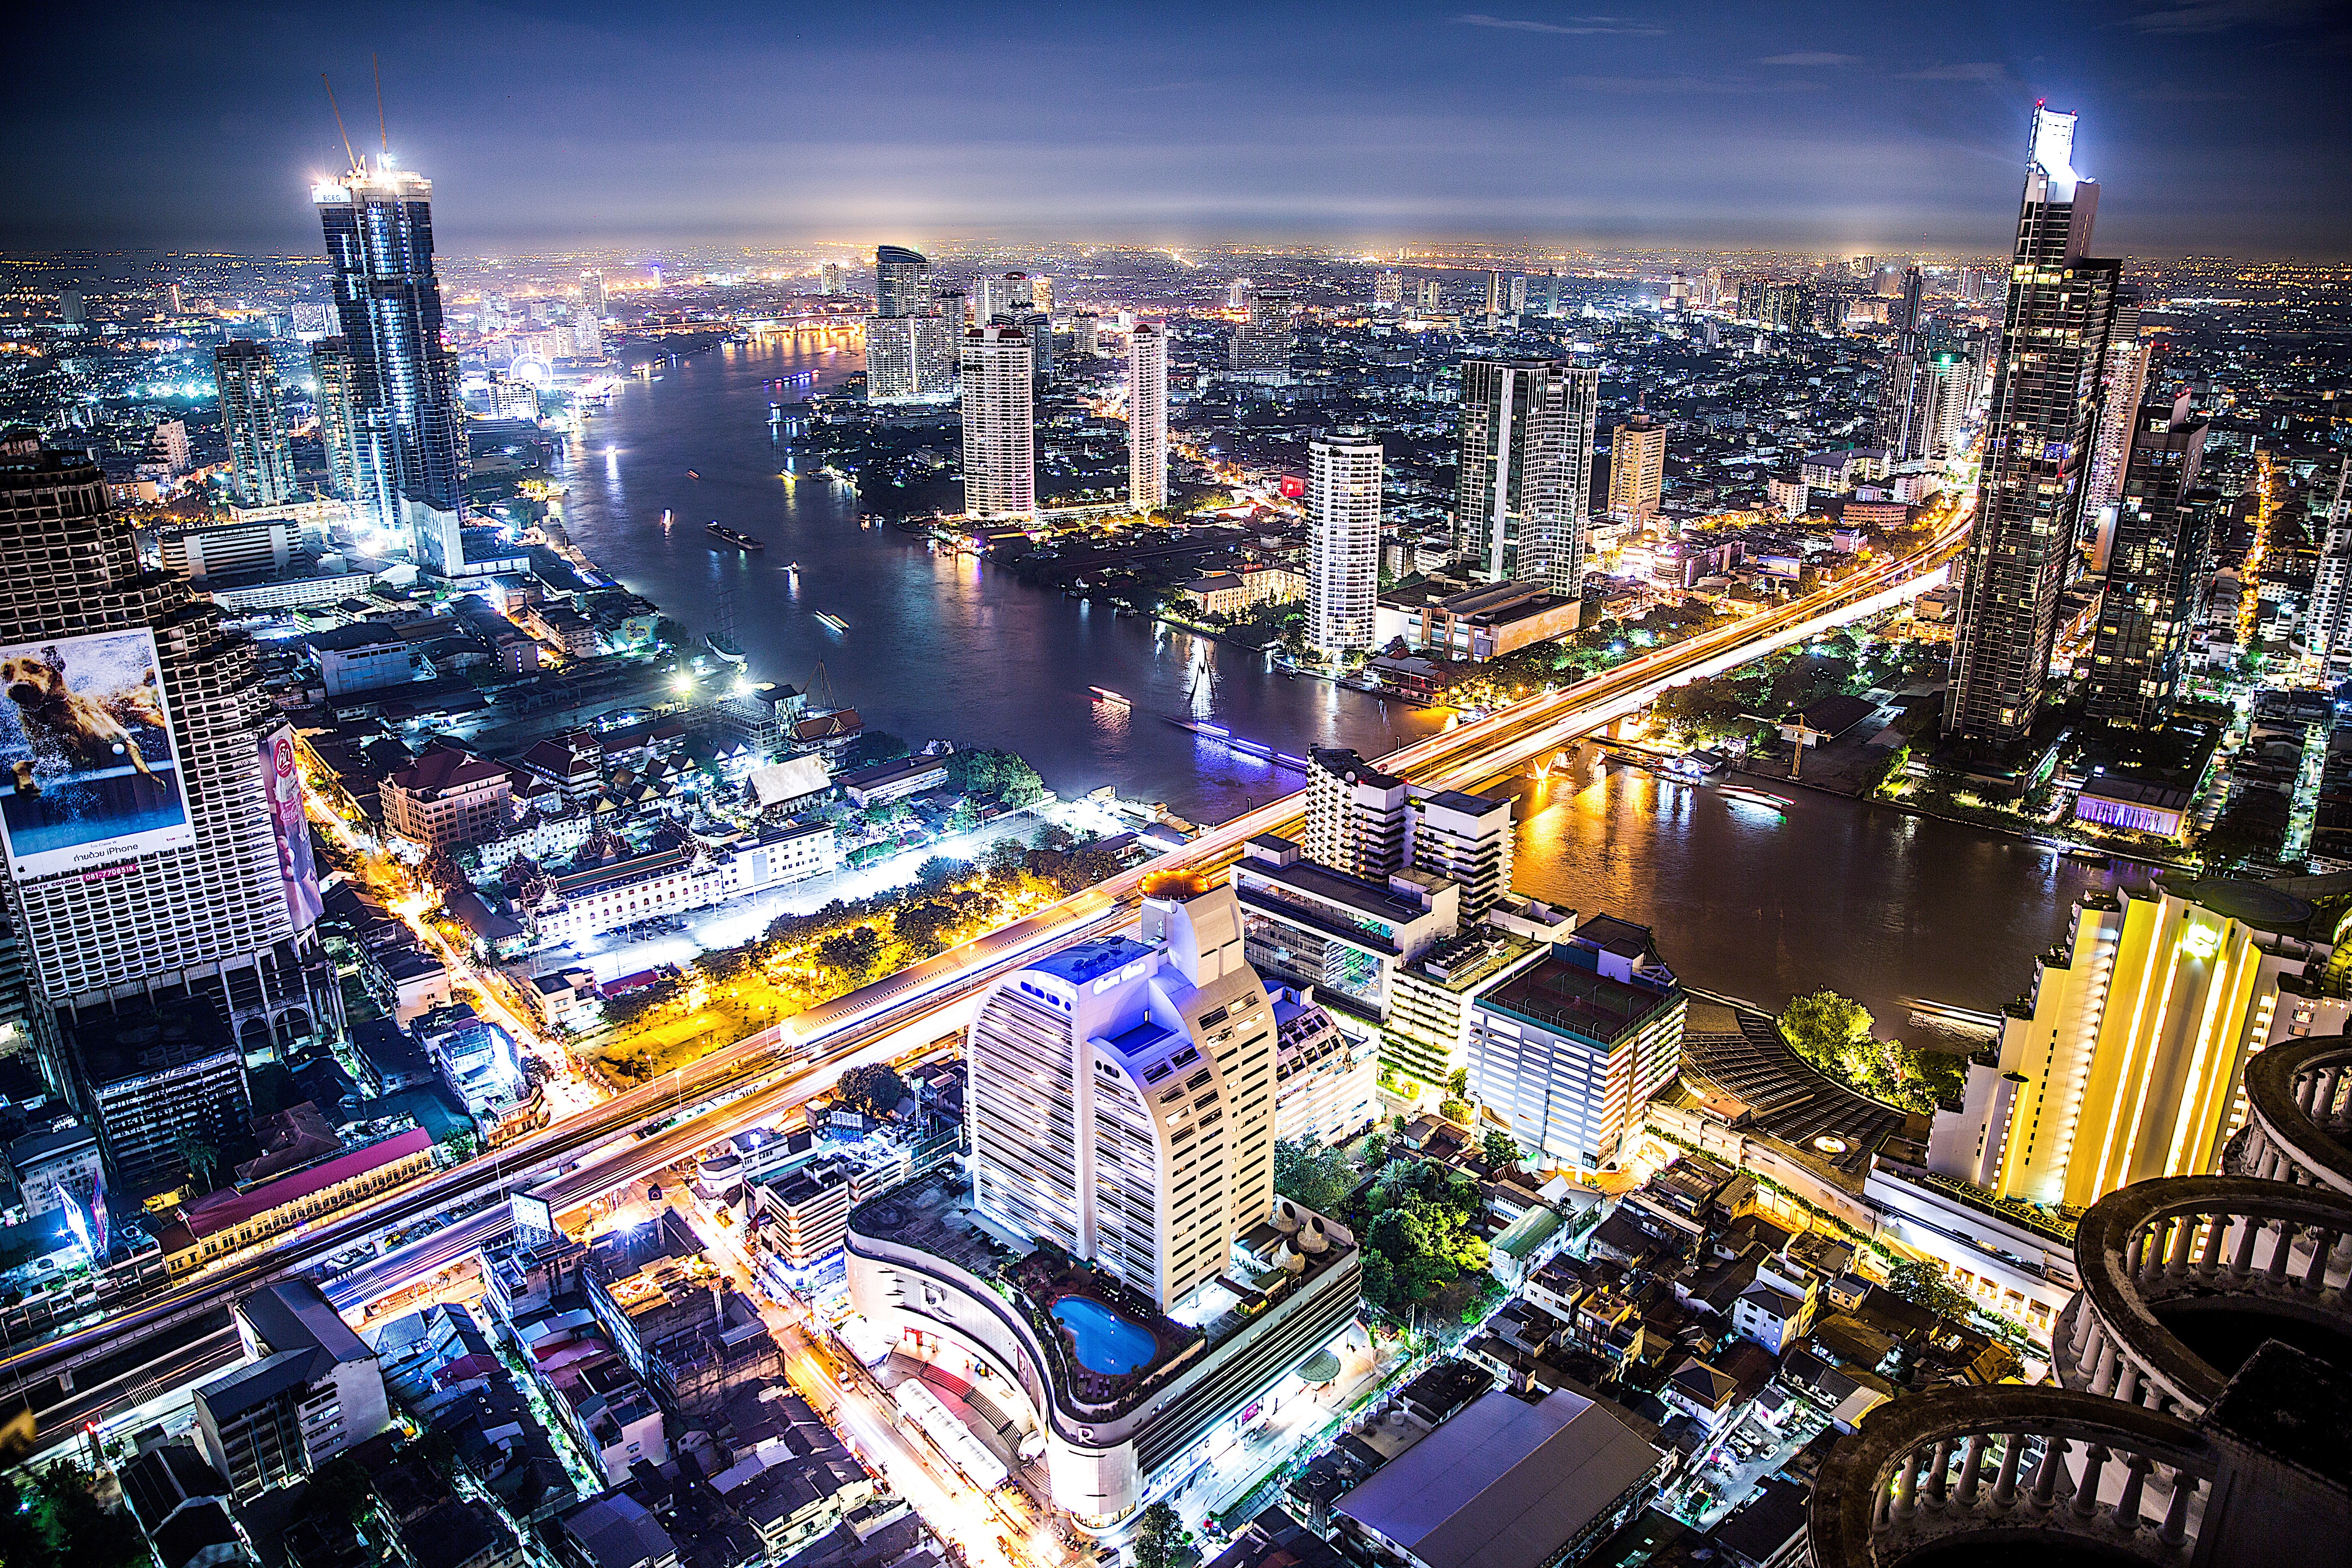 Thai financial analysis startup Jitta eyes international expansion after raising $6.5m